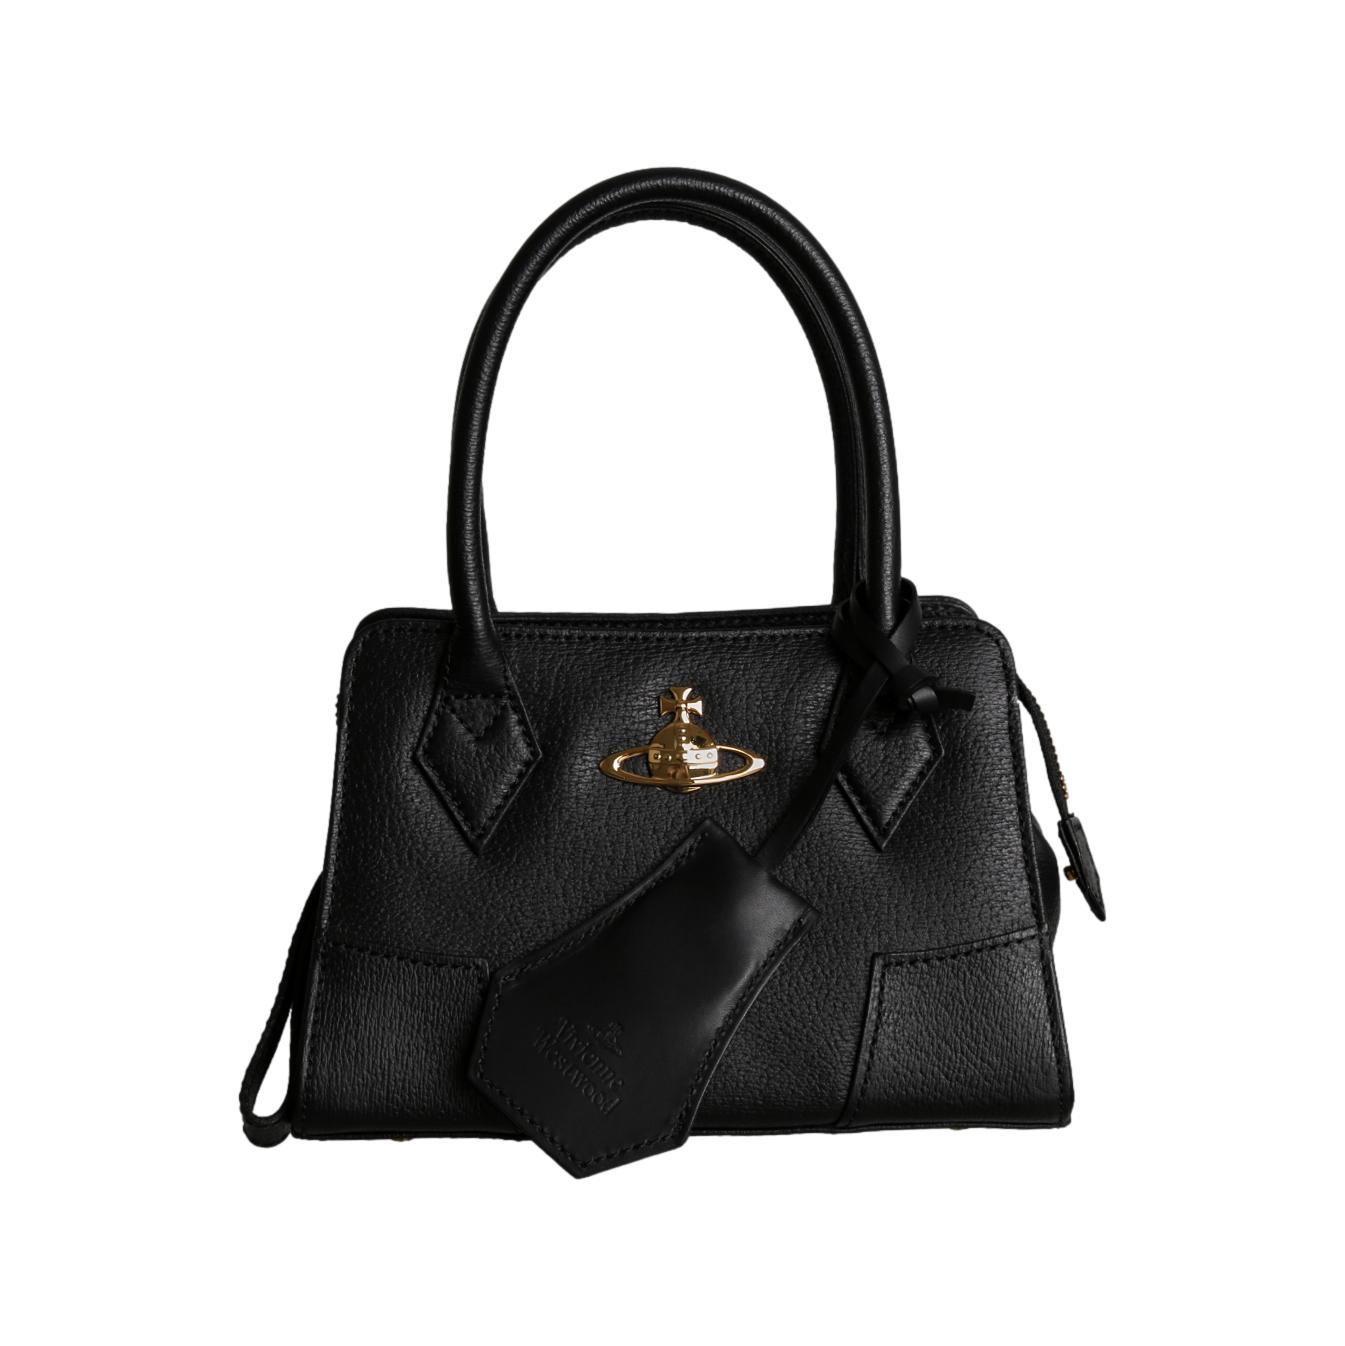 Vivienne Westwood Black Mini Top Handle Bag - Handbags